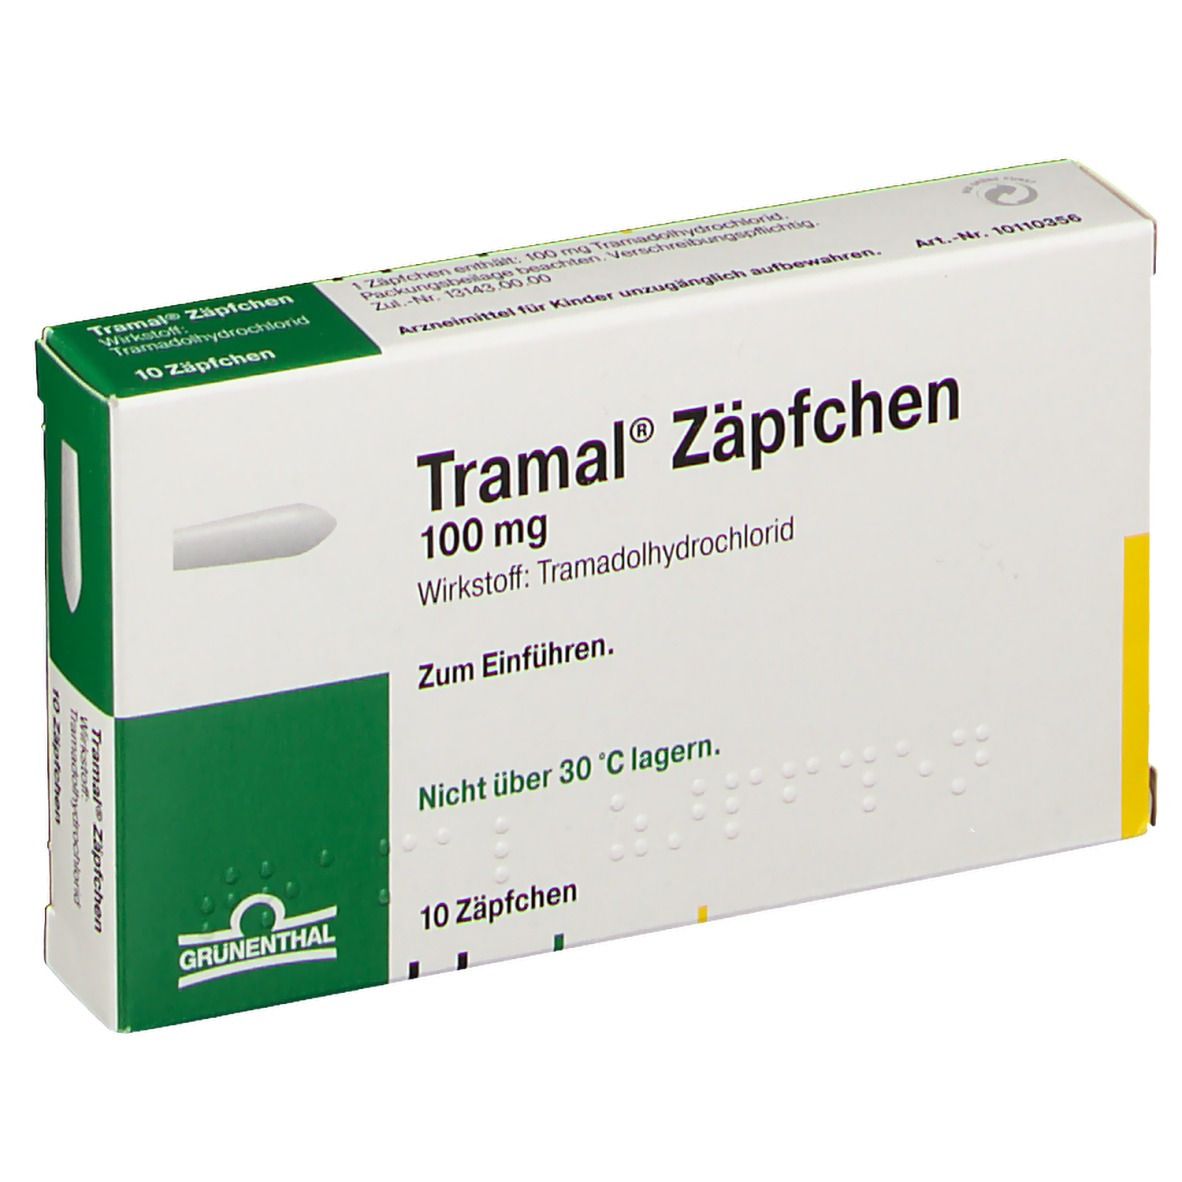 Tramal® Zäpfchen 100 mg